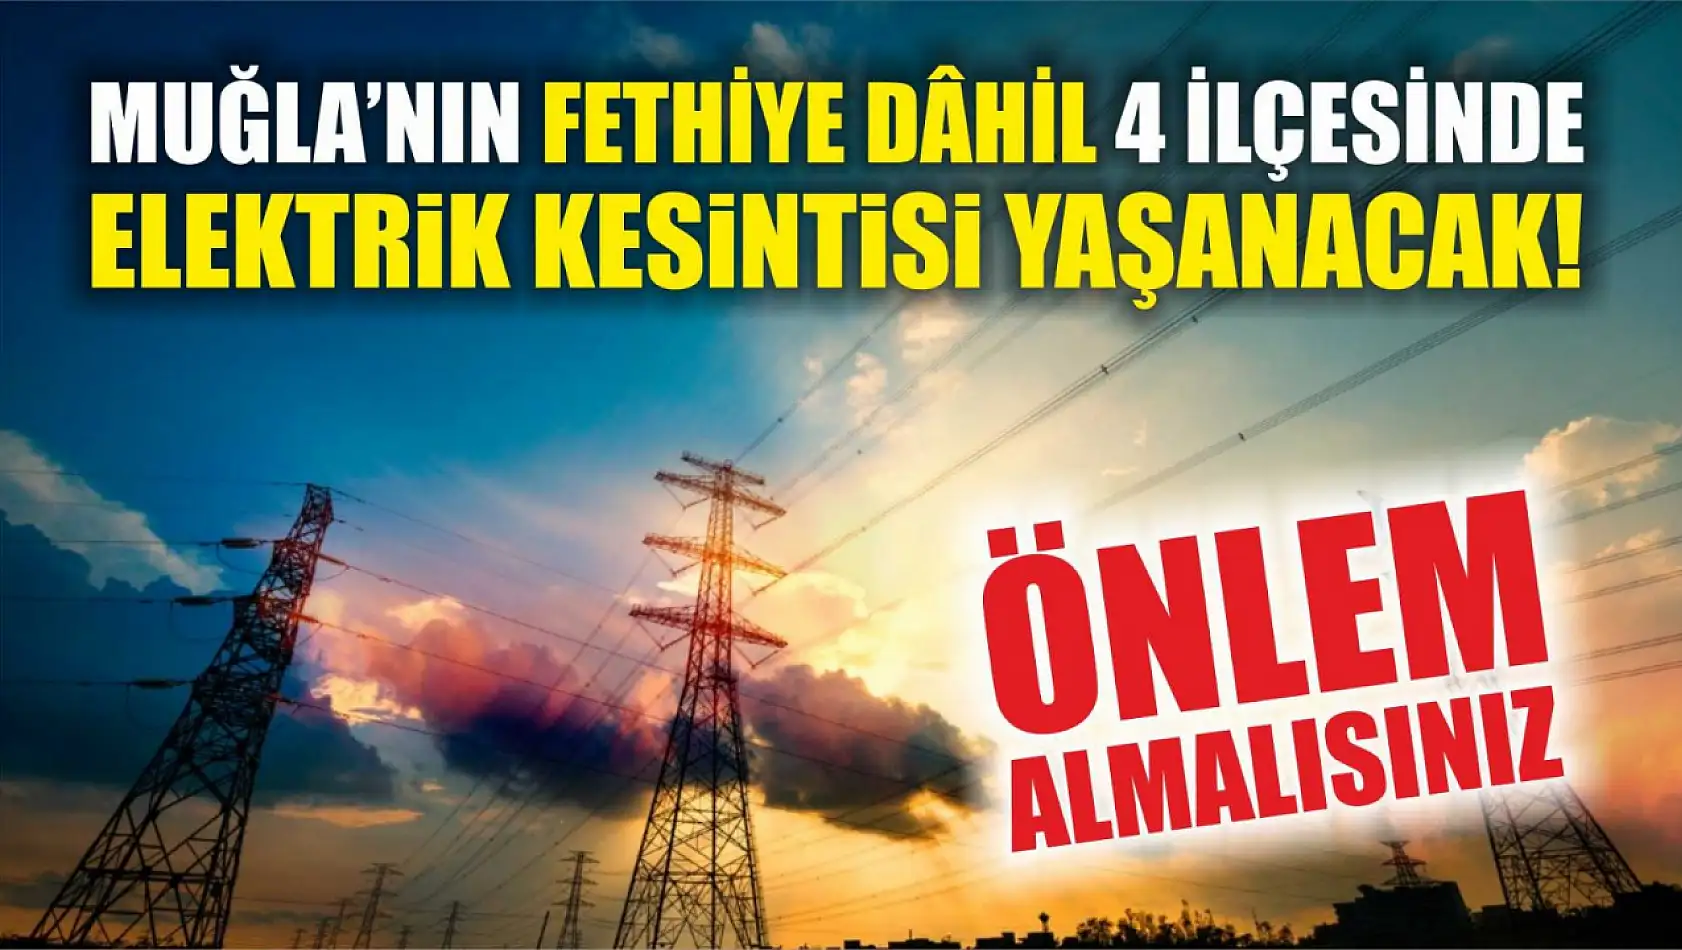 Muğla'nın Fethiye dâhil 4 ilçesinde elektrik kesintisi yaşanacak! Önlem almalısınız